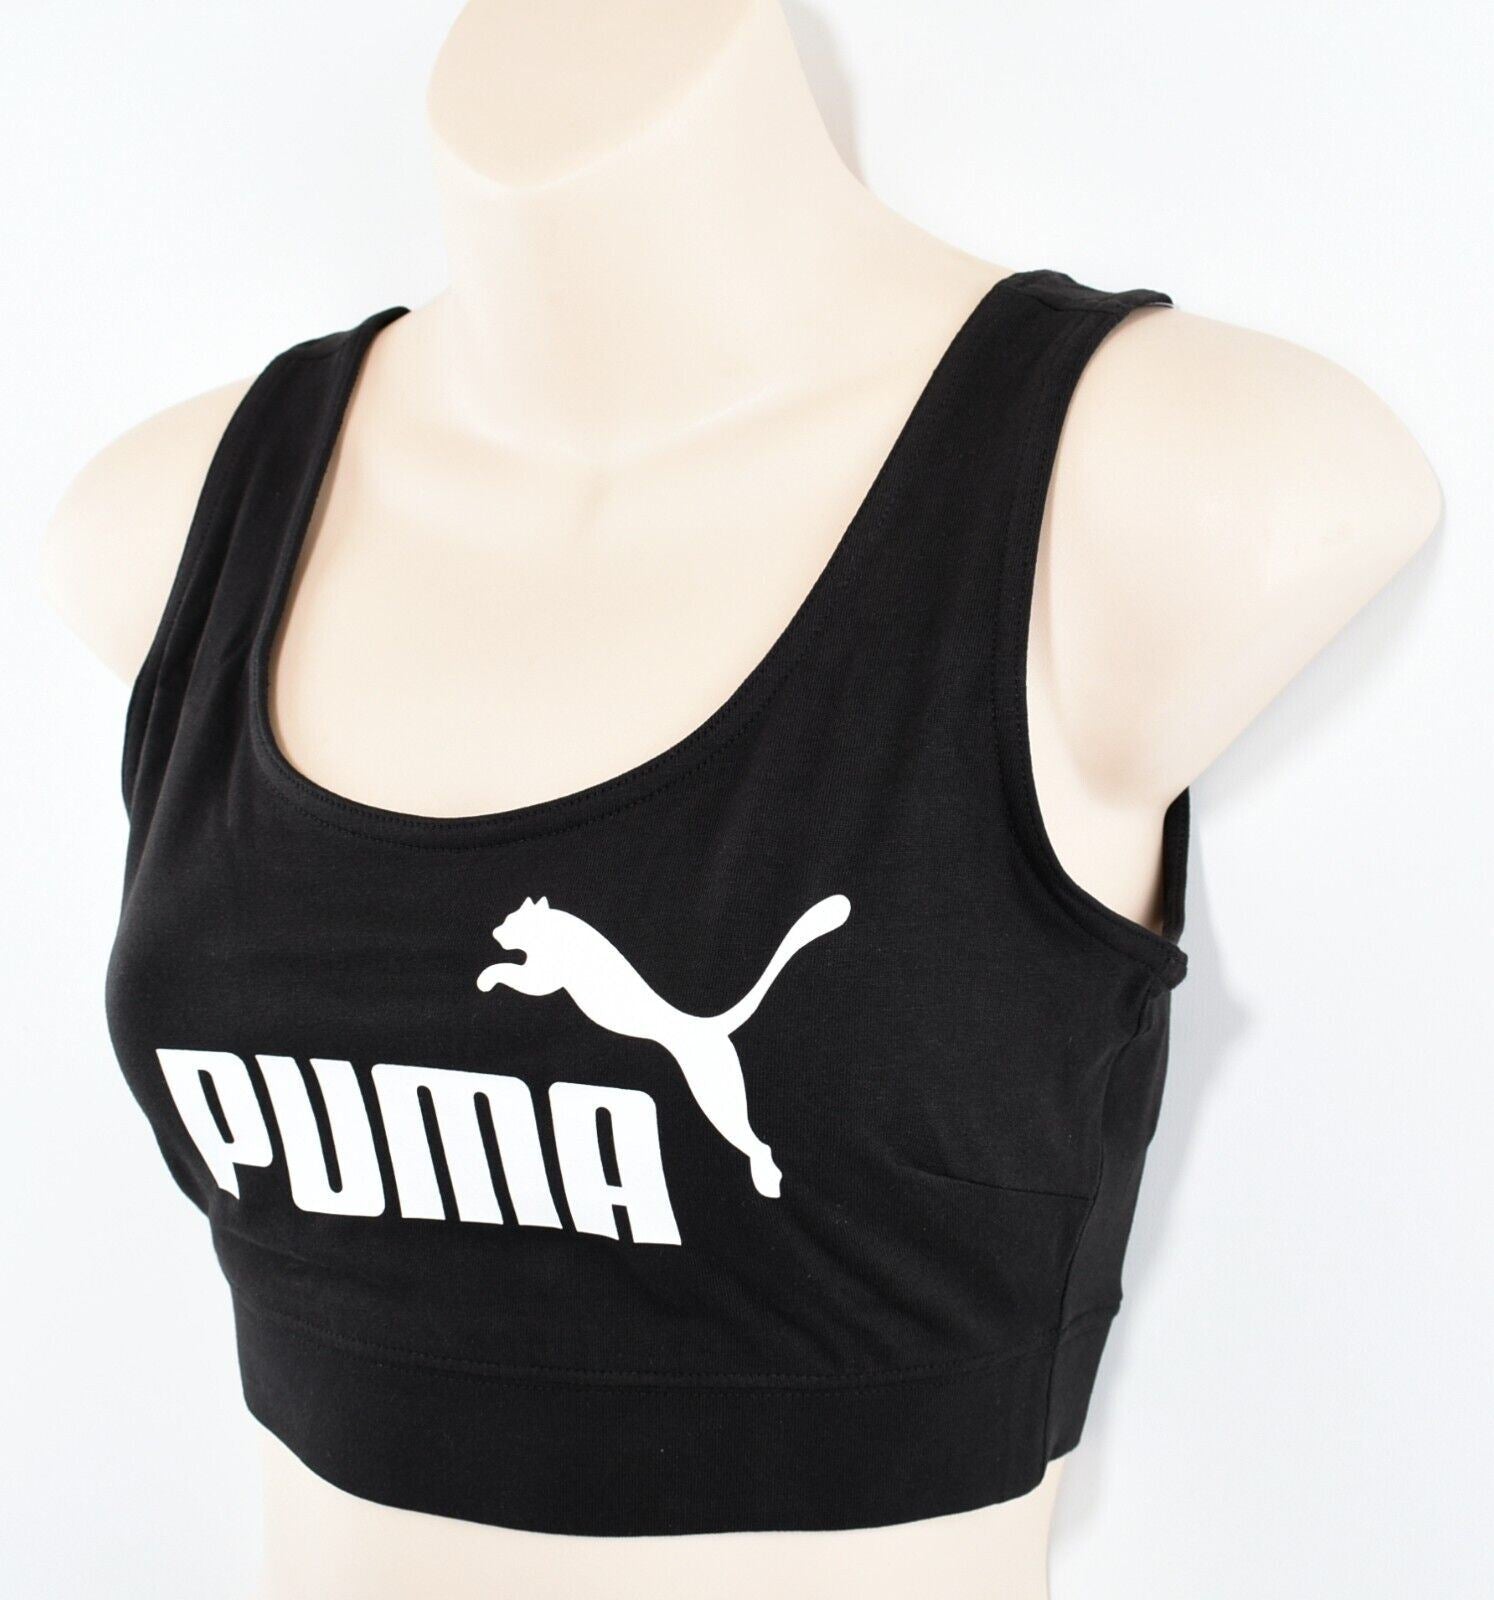 PUMA Women's Sports Bra Top, Tight Fit, Black, size XL (UK 16-18)